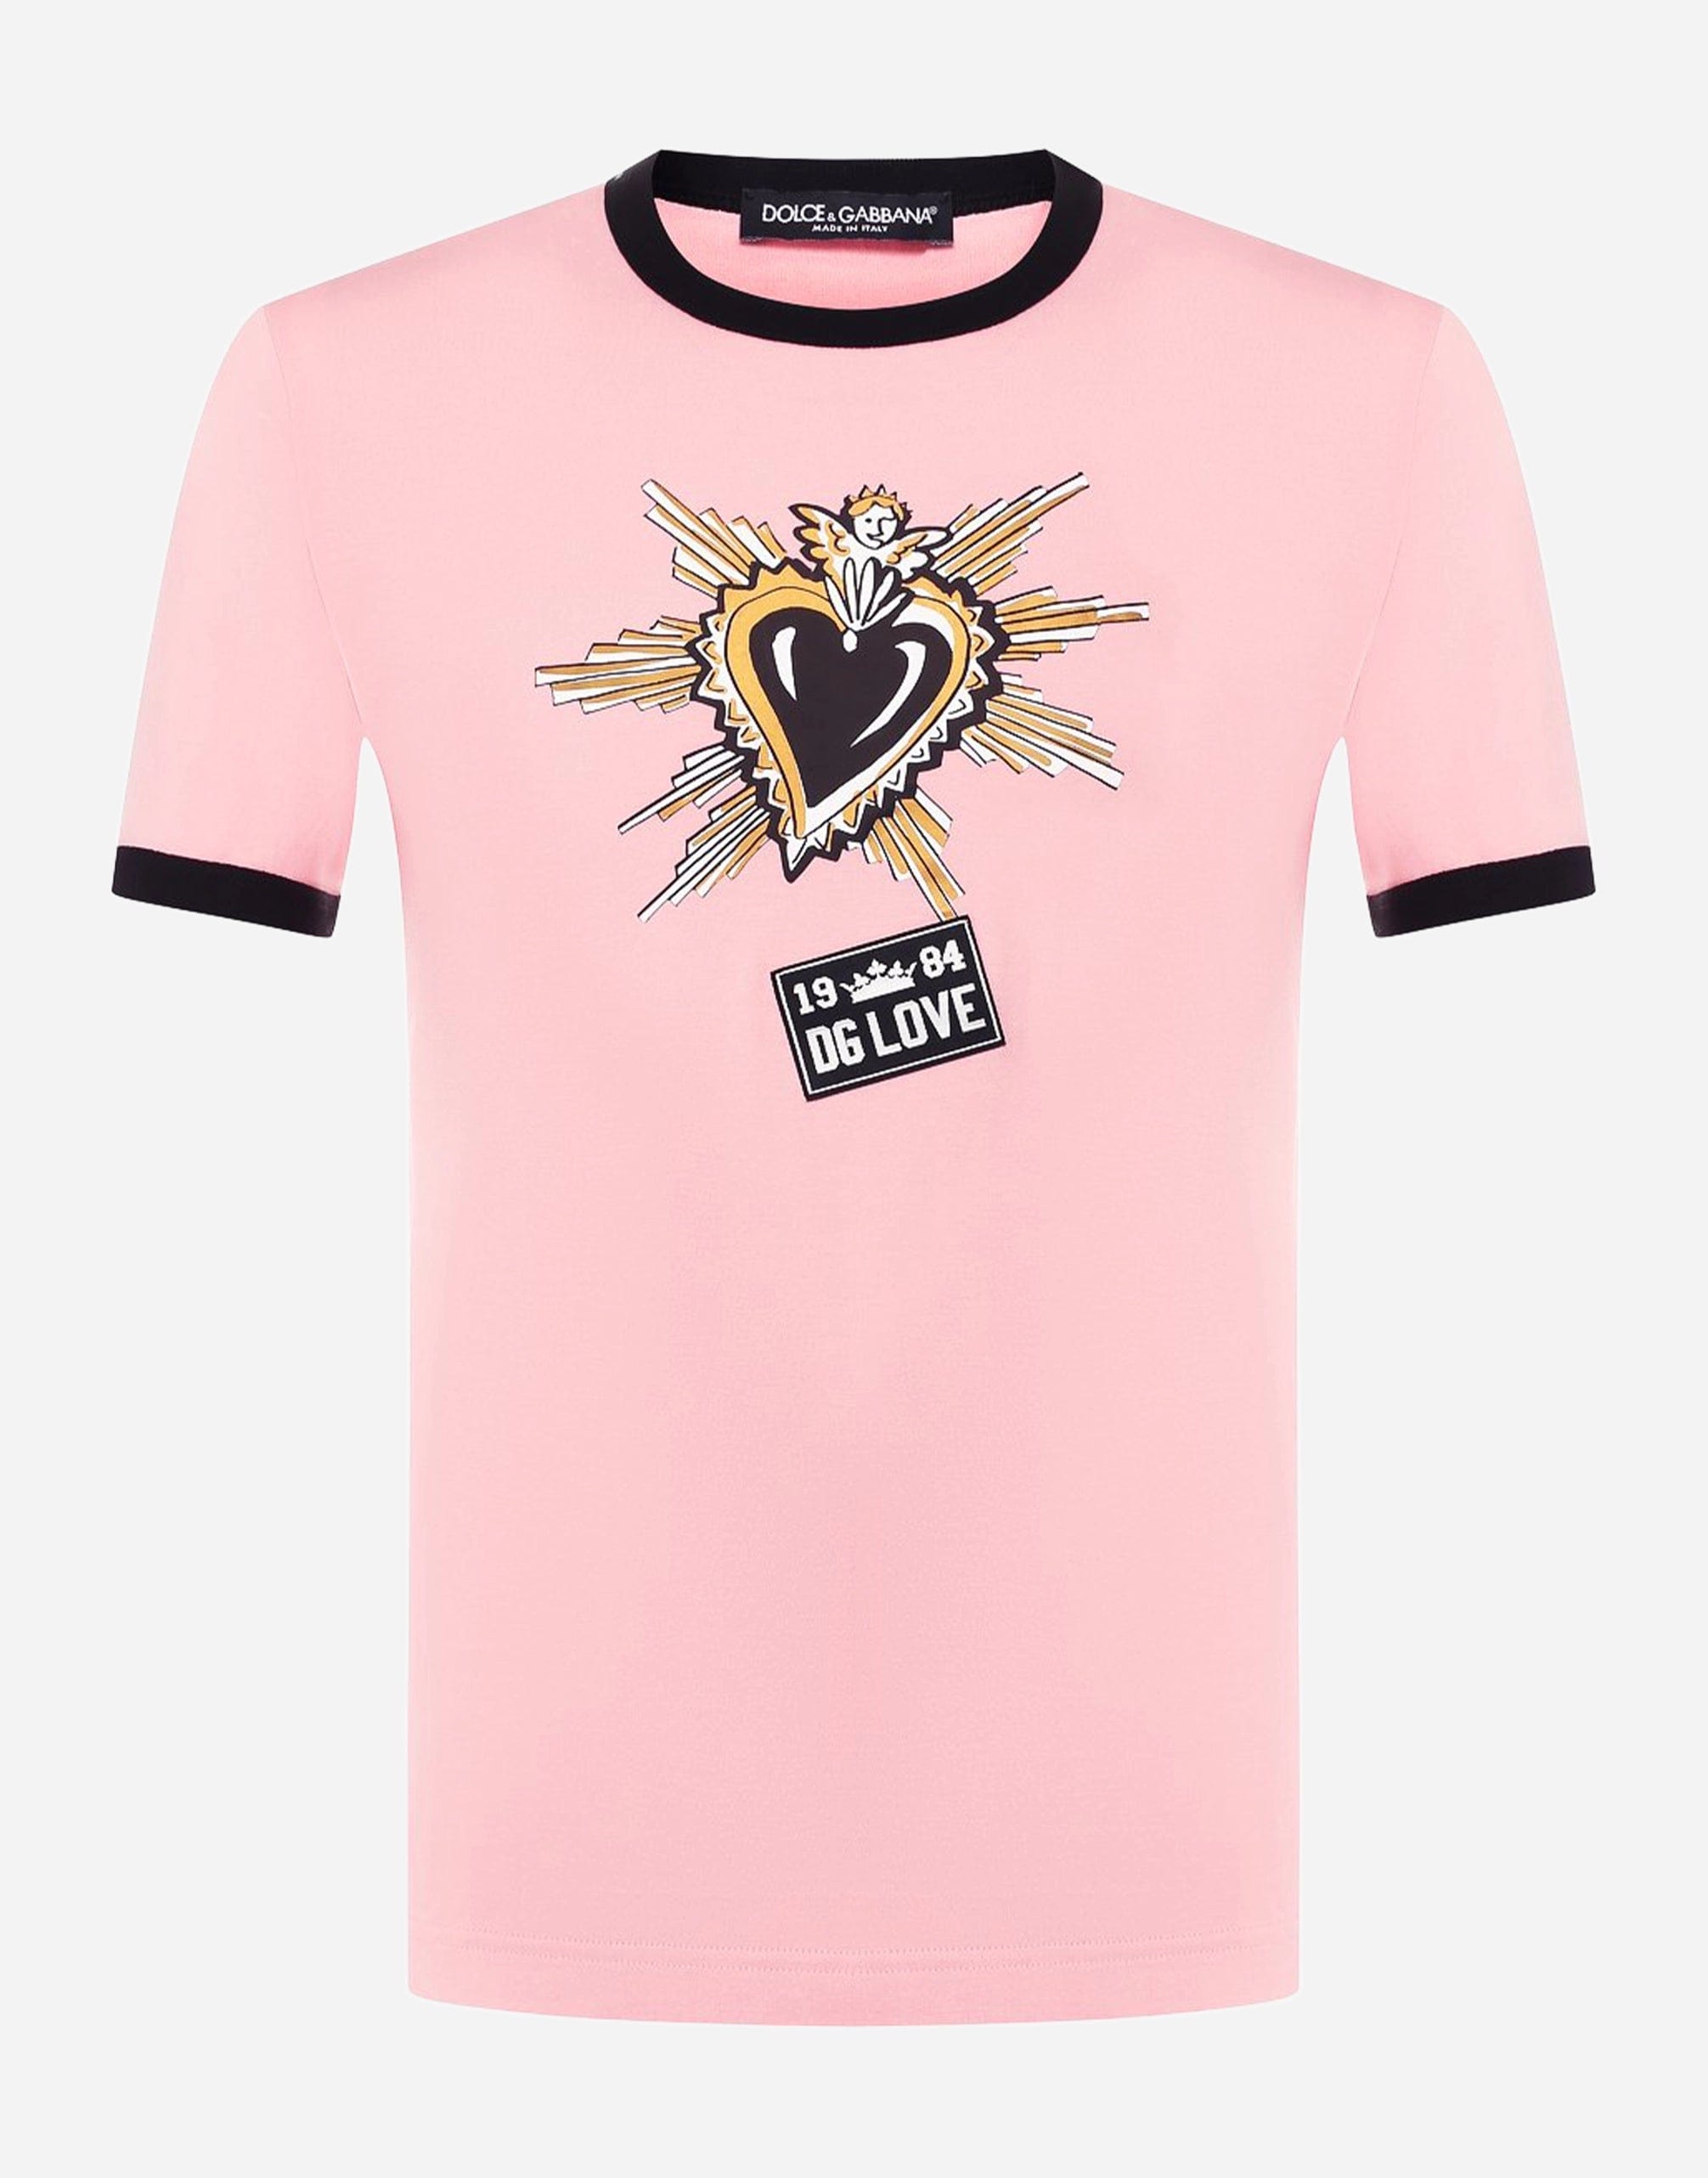 Dolce & Gabbana Sacred Heart DG Love T-Shirt